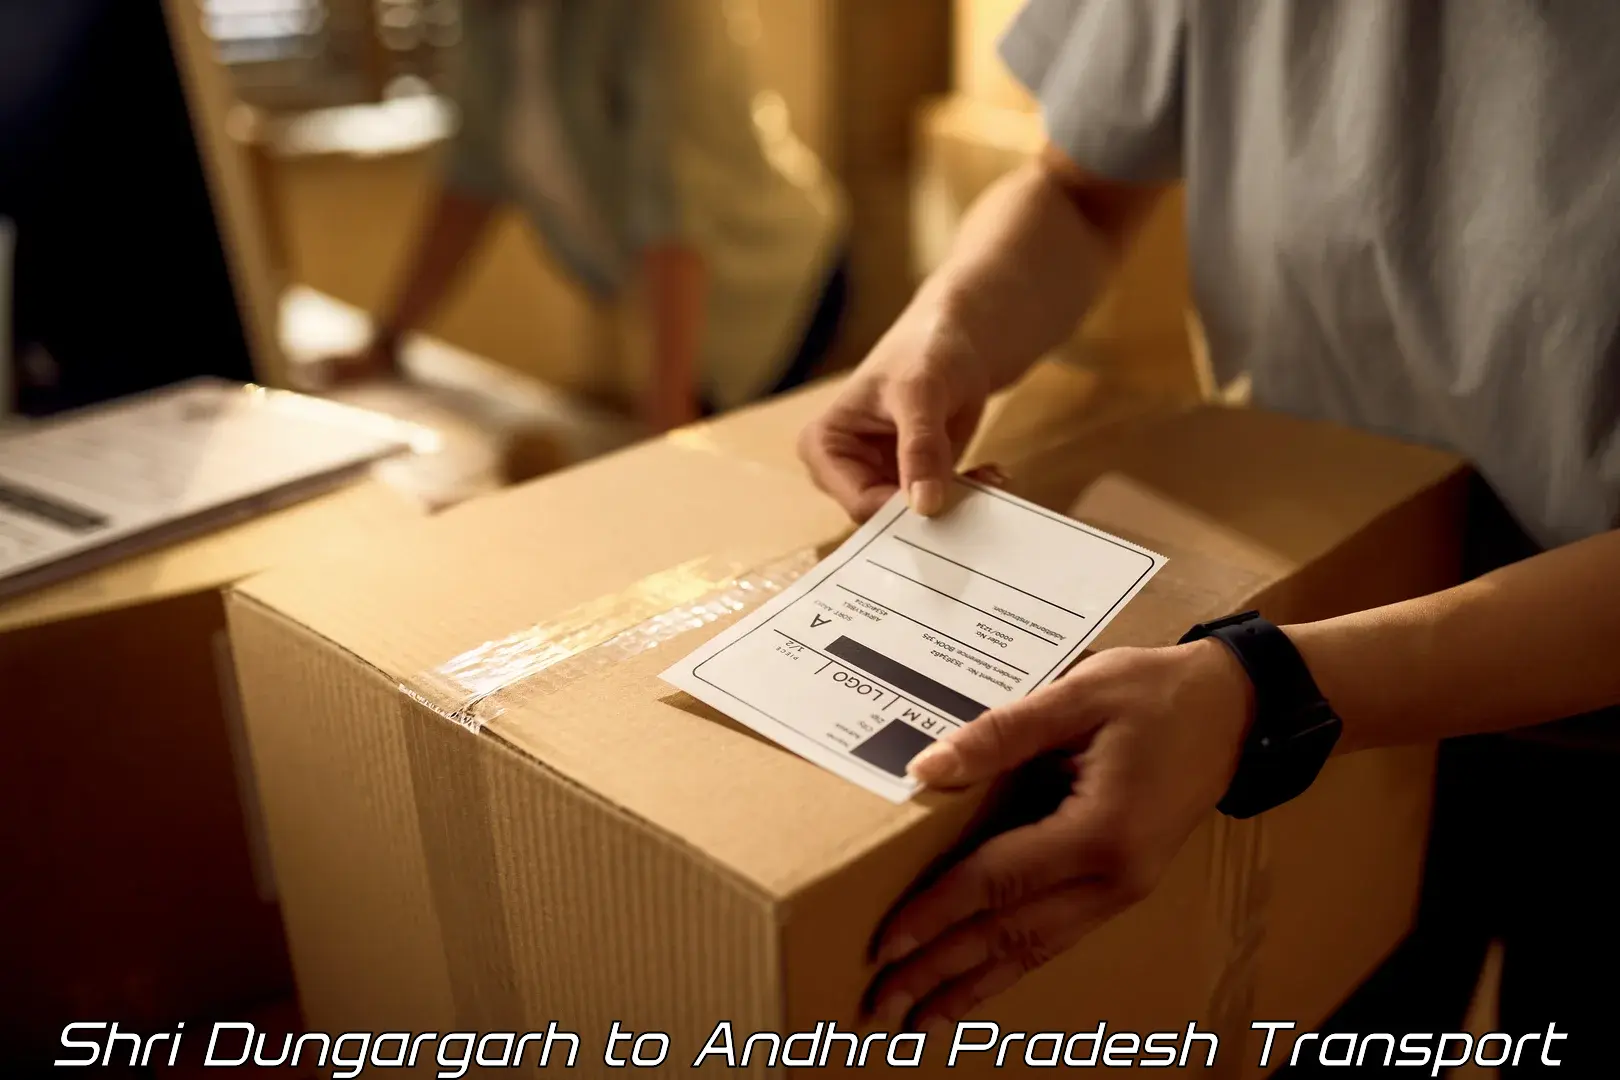 Transport in sharing Shri Dungargarh to Tadipatri